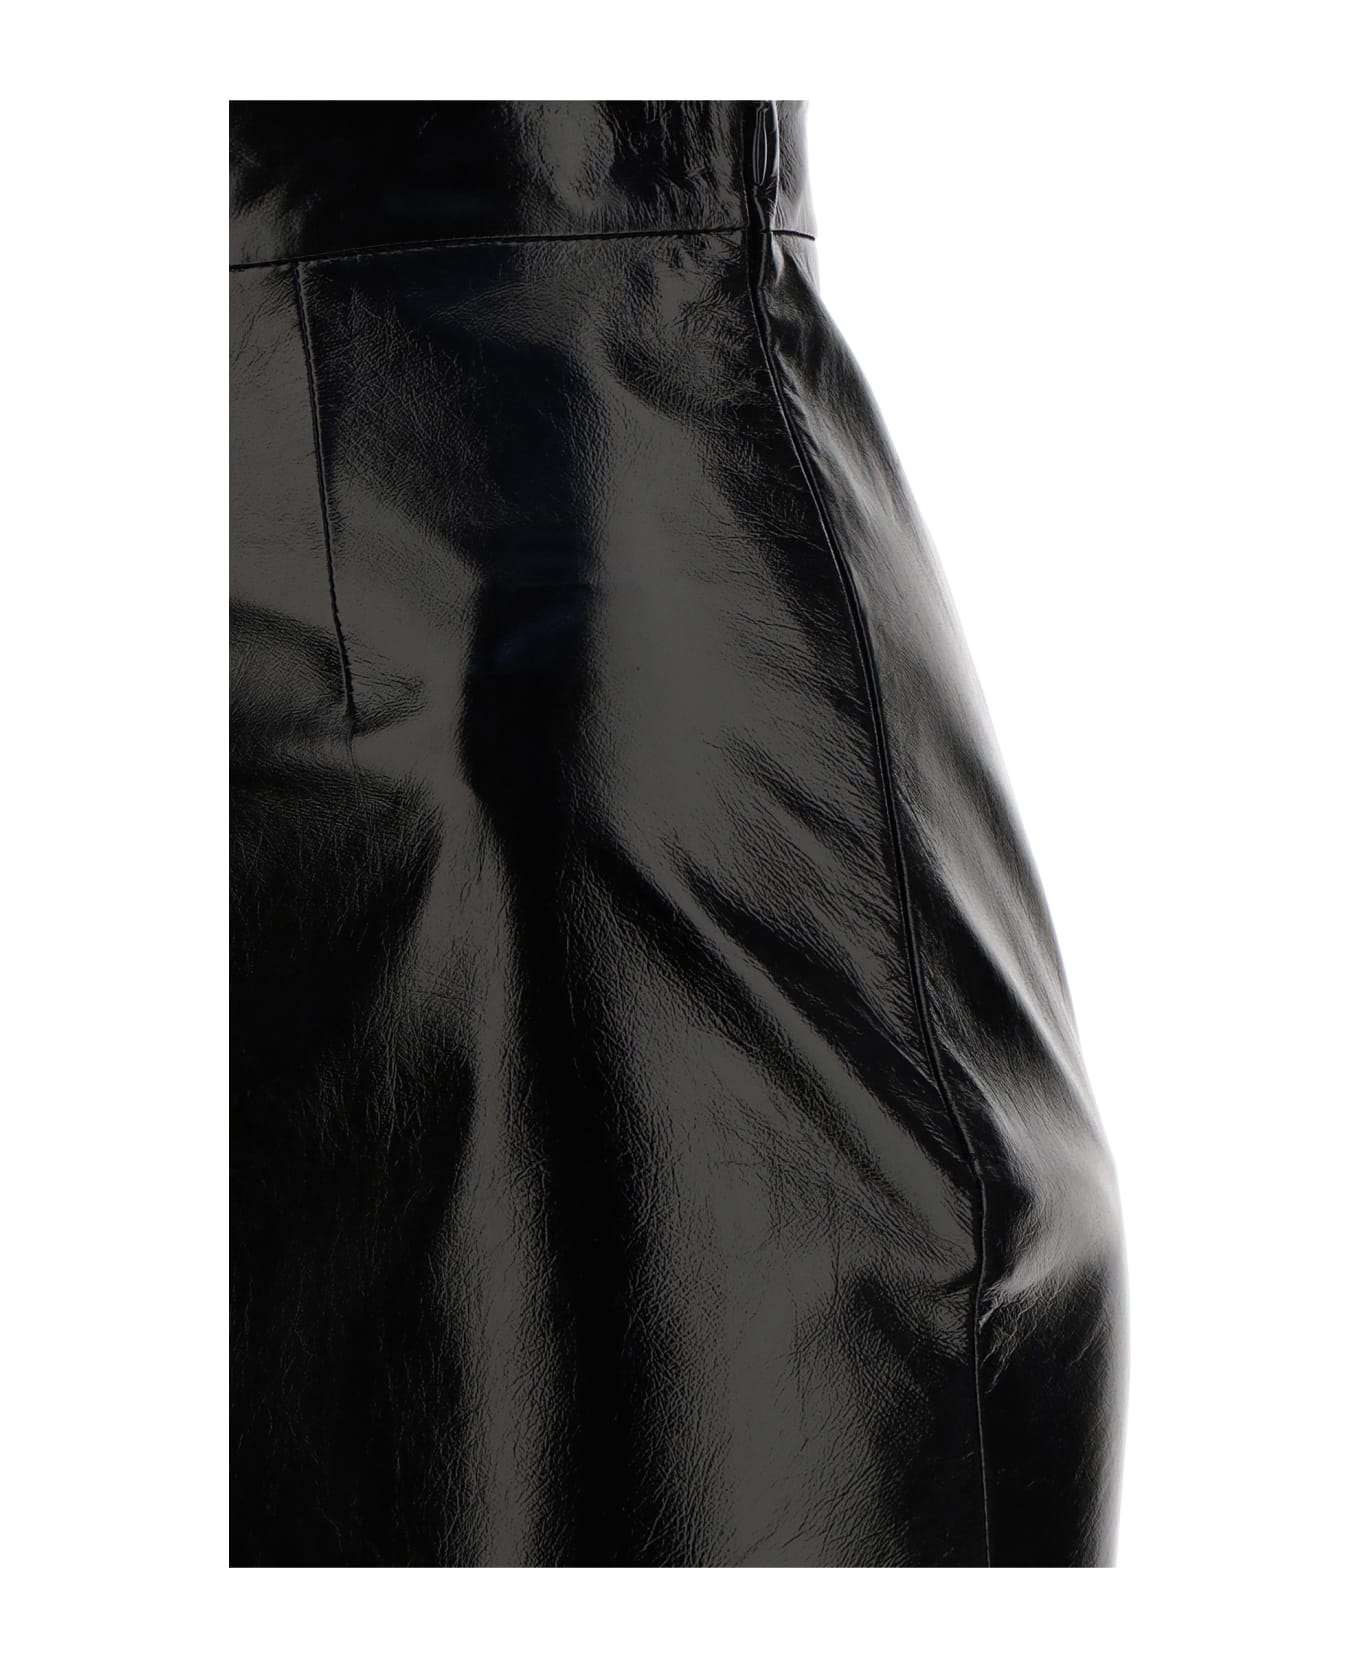 Prada Skirt - Nero スカート